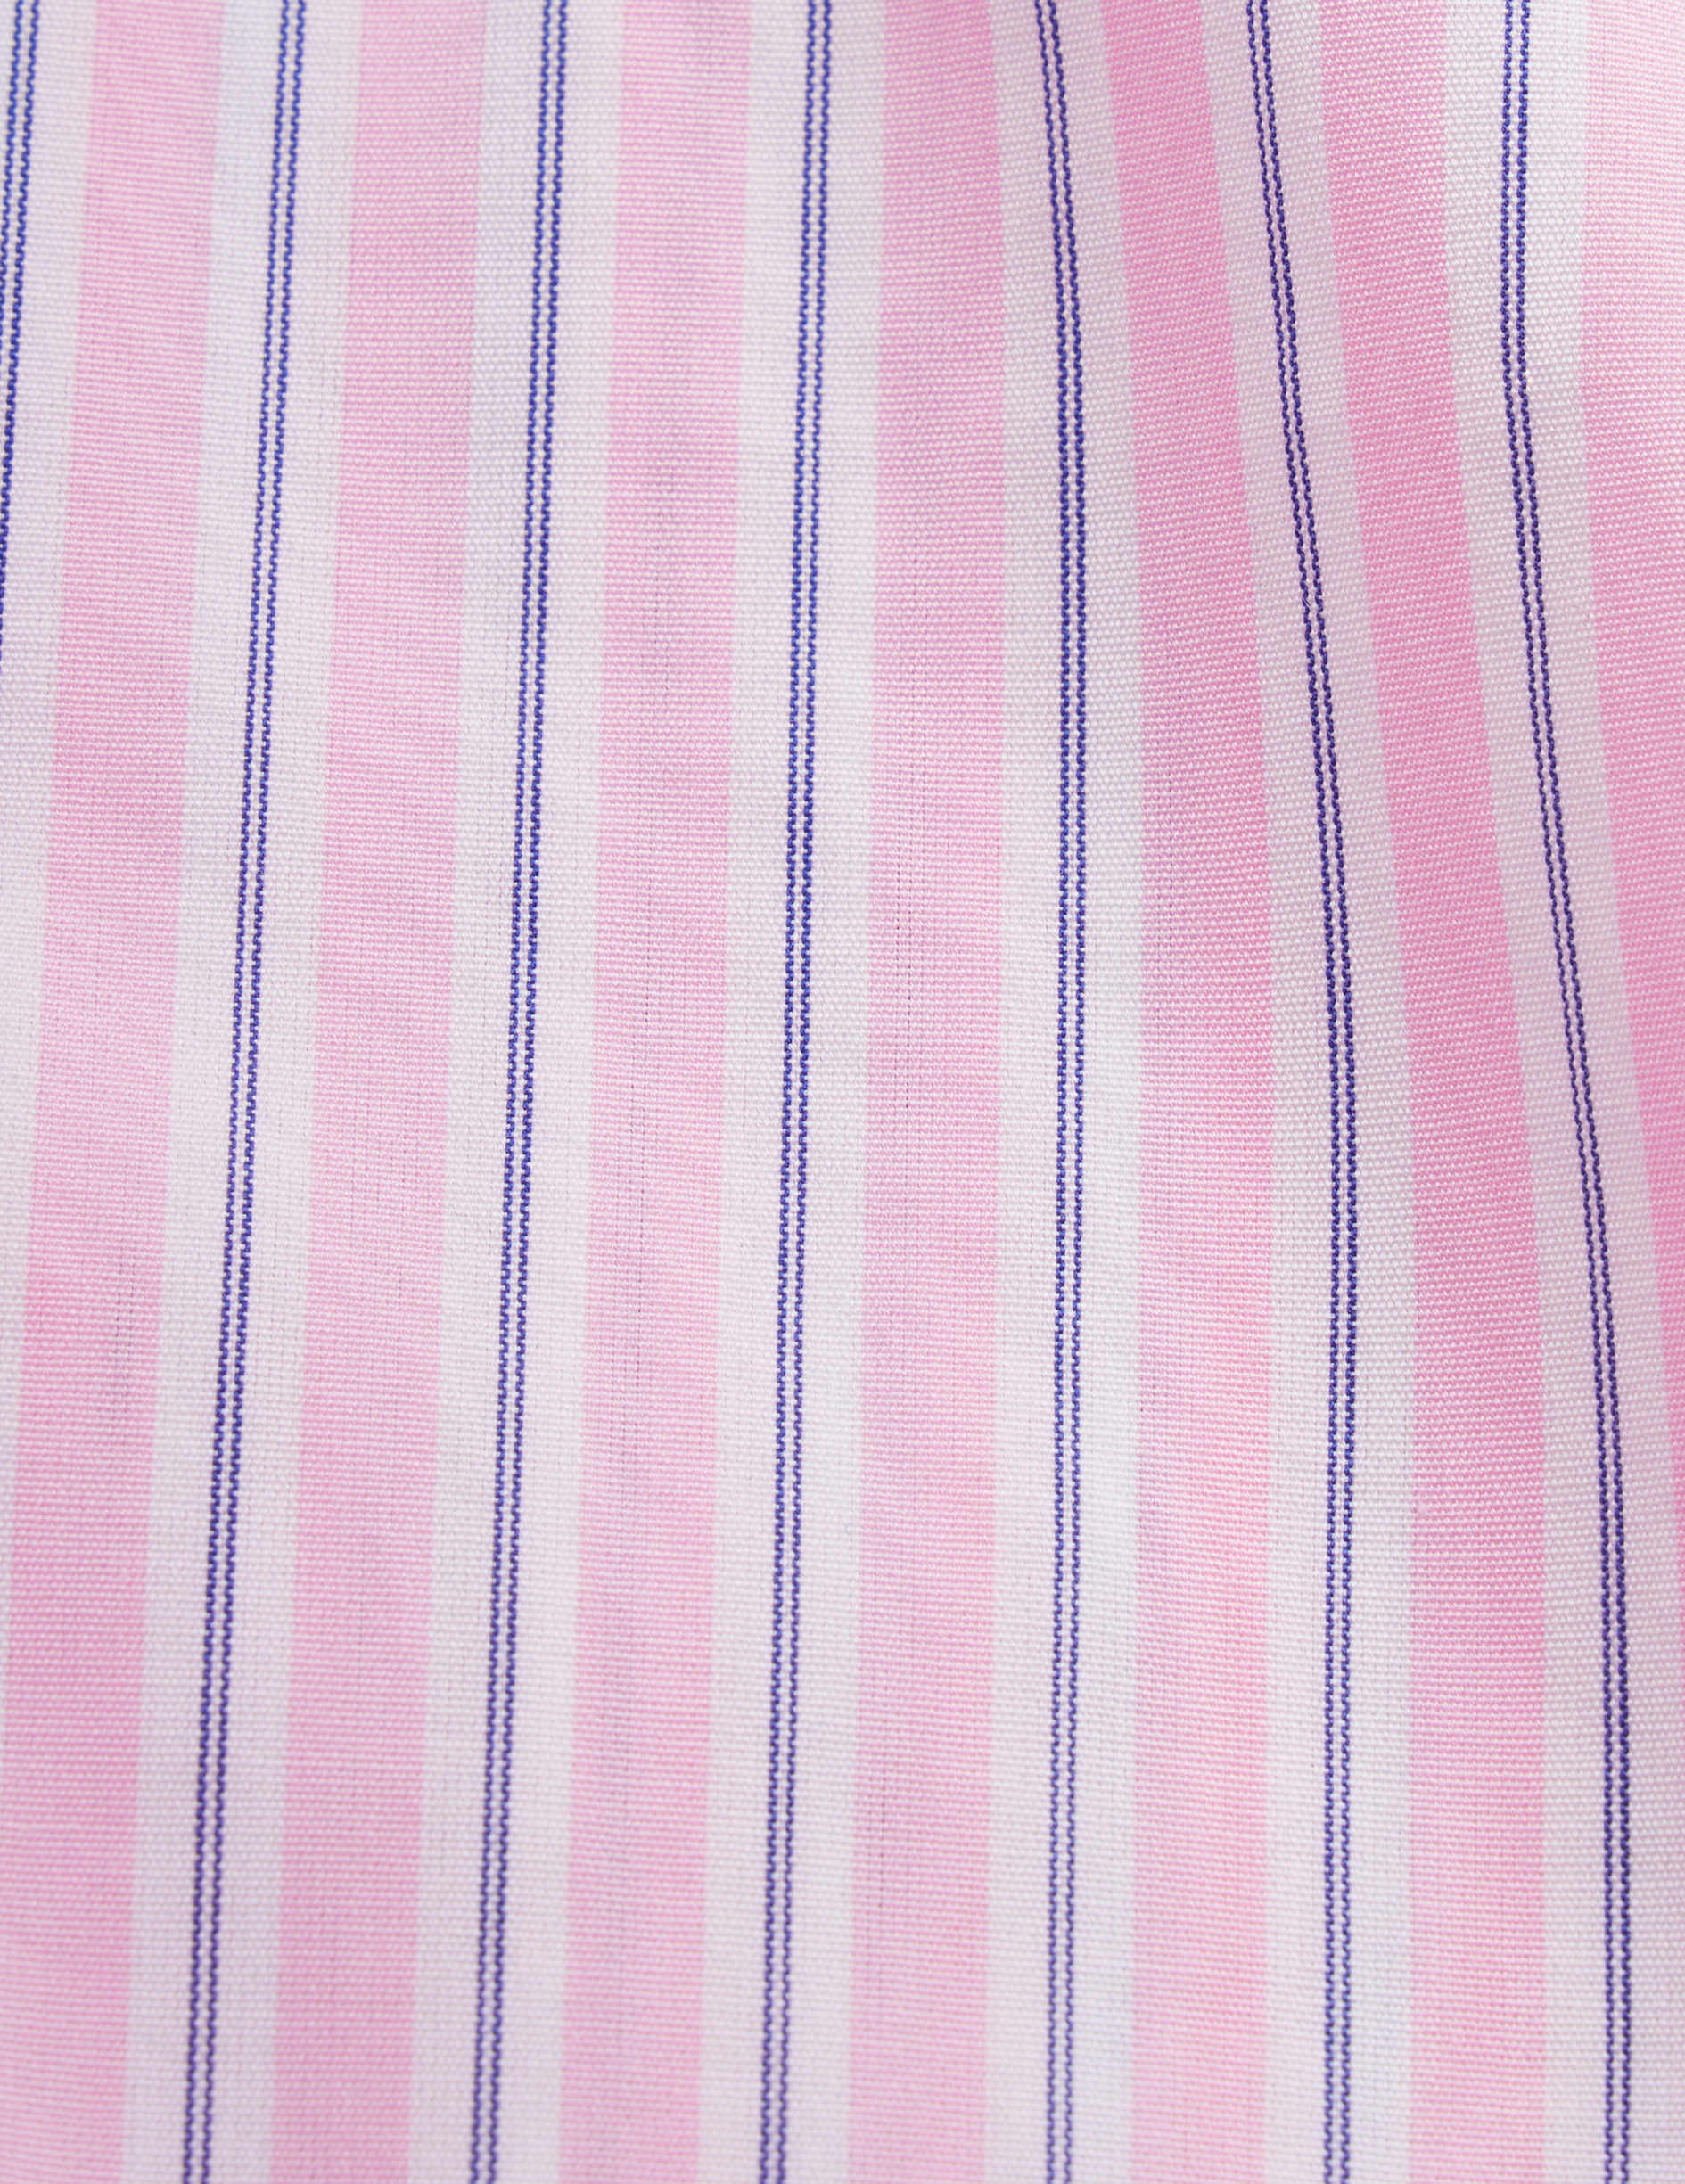 Chemise semi-ajustée rayée rose - Popeline - Col Figaret